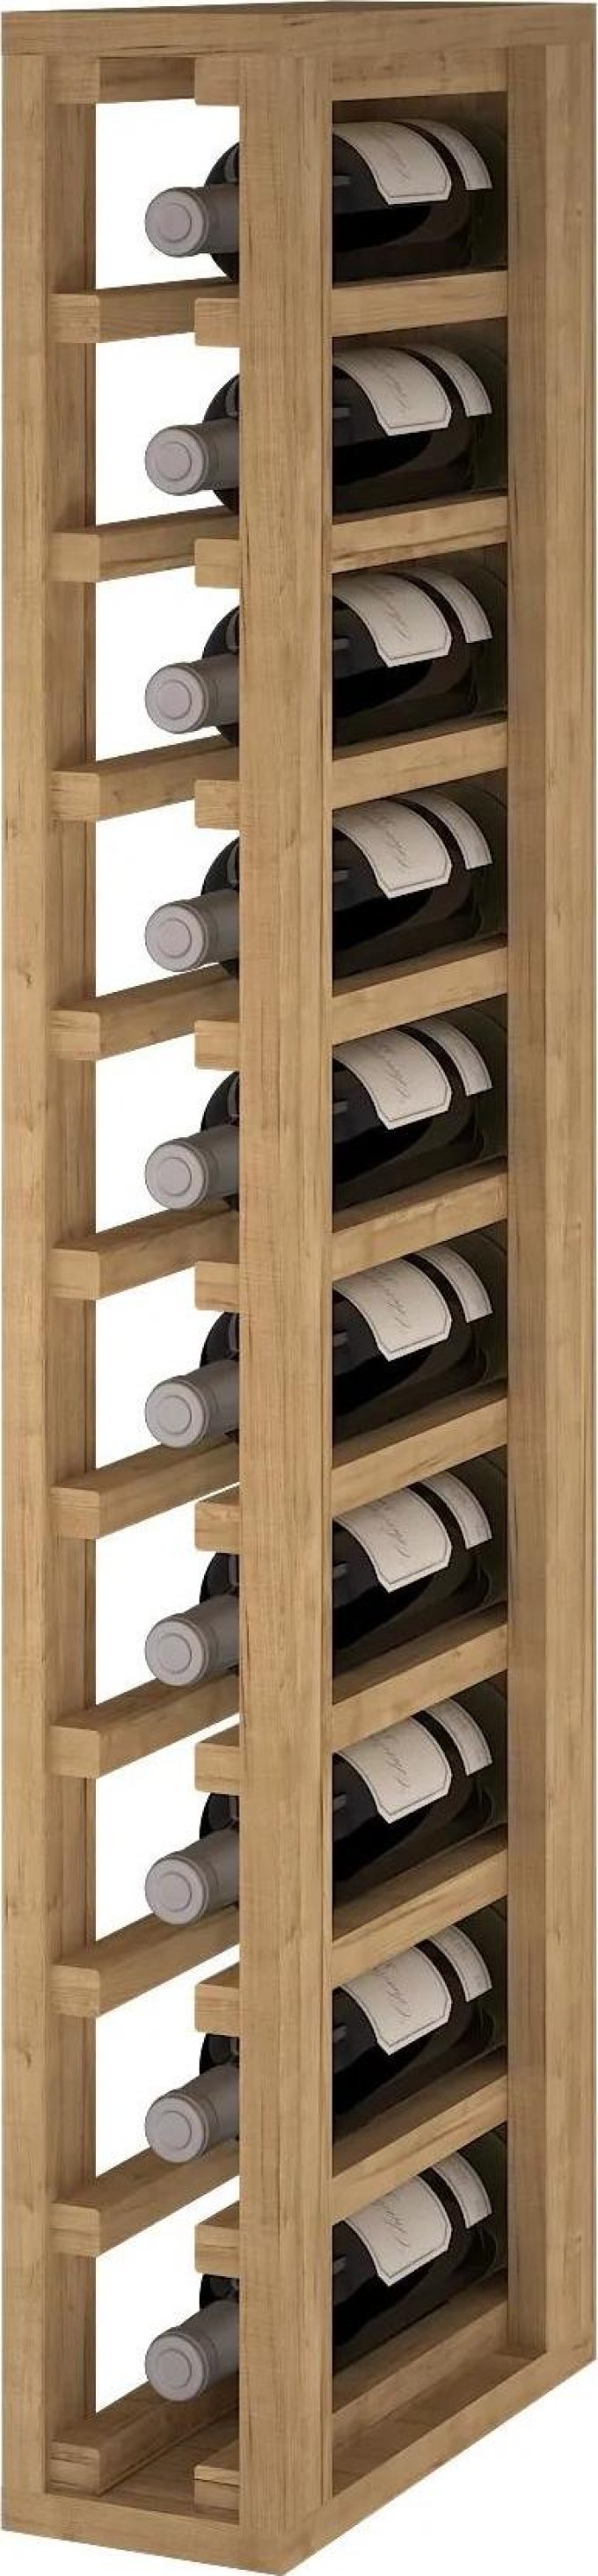 Regál na víno vyrobený z borovicového nebo dubového dřeva ve třech variantách provedení